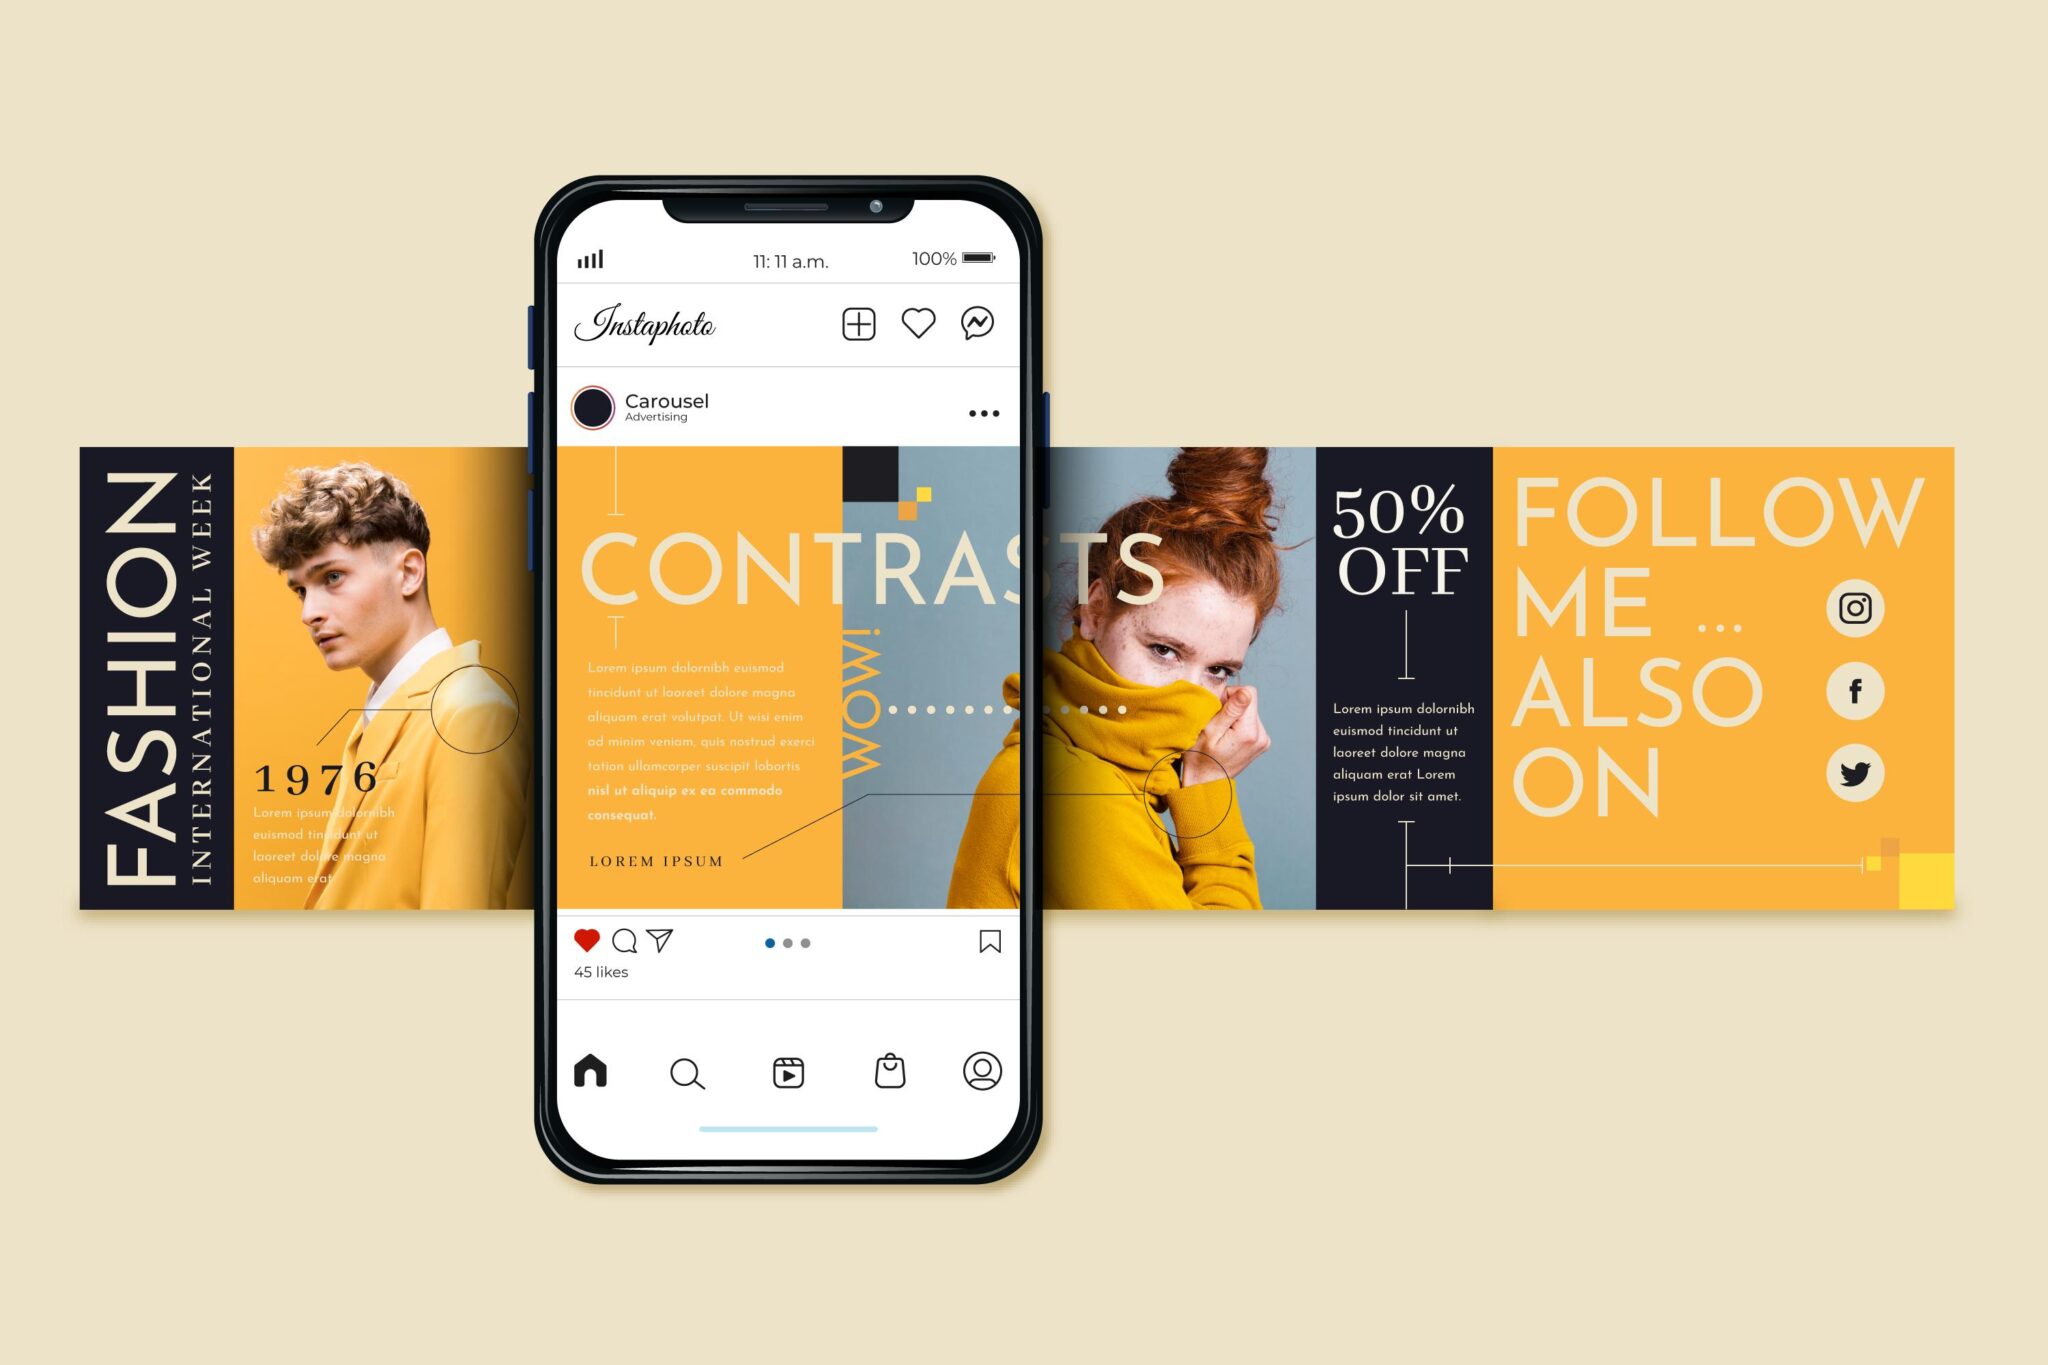 Robert Katai: Ce le recomandă Instagram creatorilor de conținut dacă vor să aibă succes? (Guest Post)